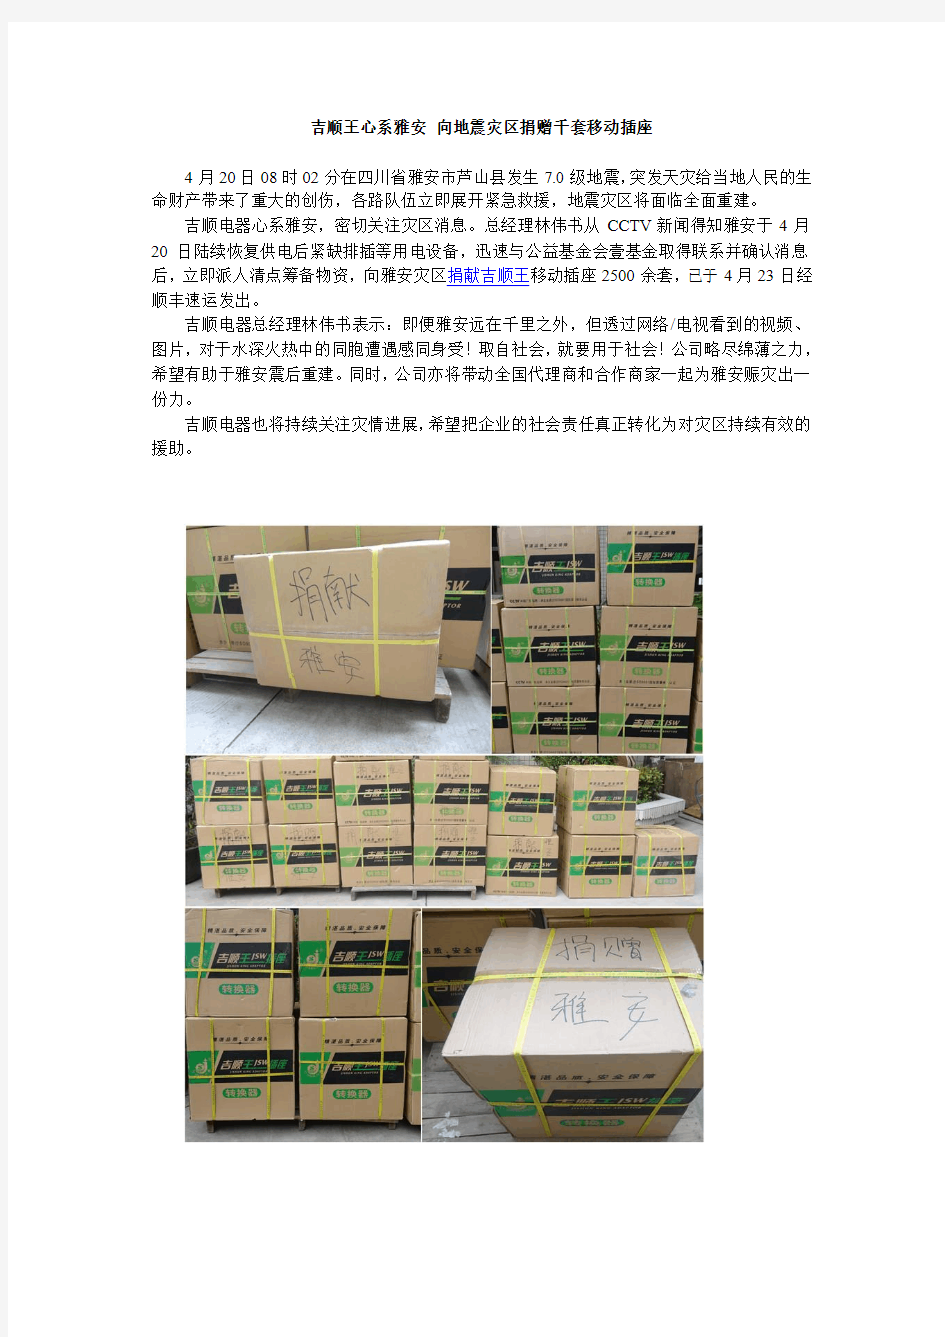 吉顺王心系雅安 向地震灾区捐赠数千套移动插座